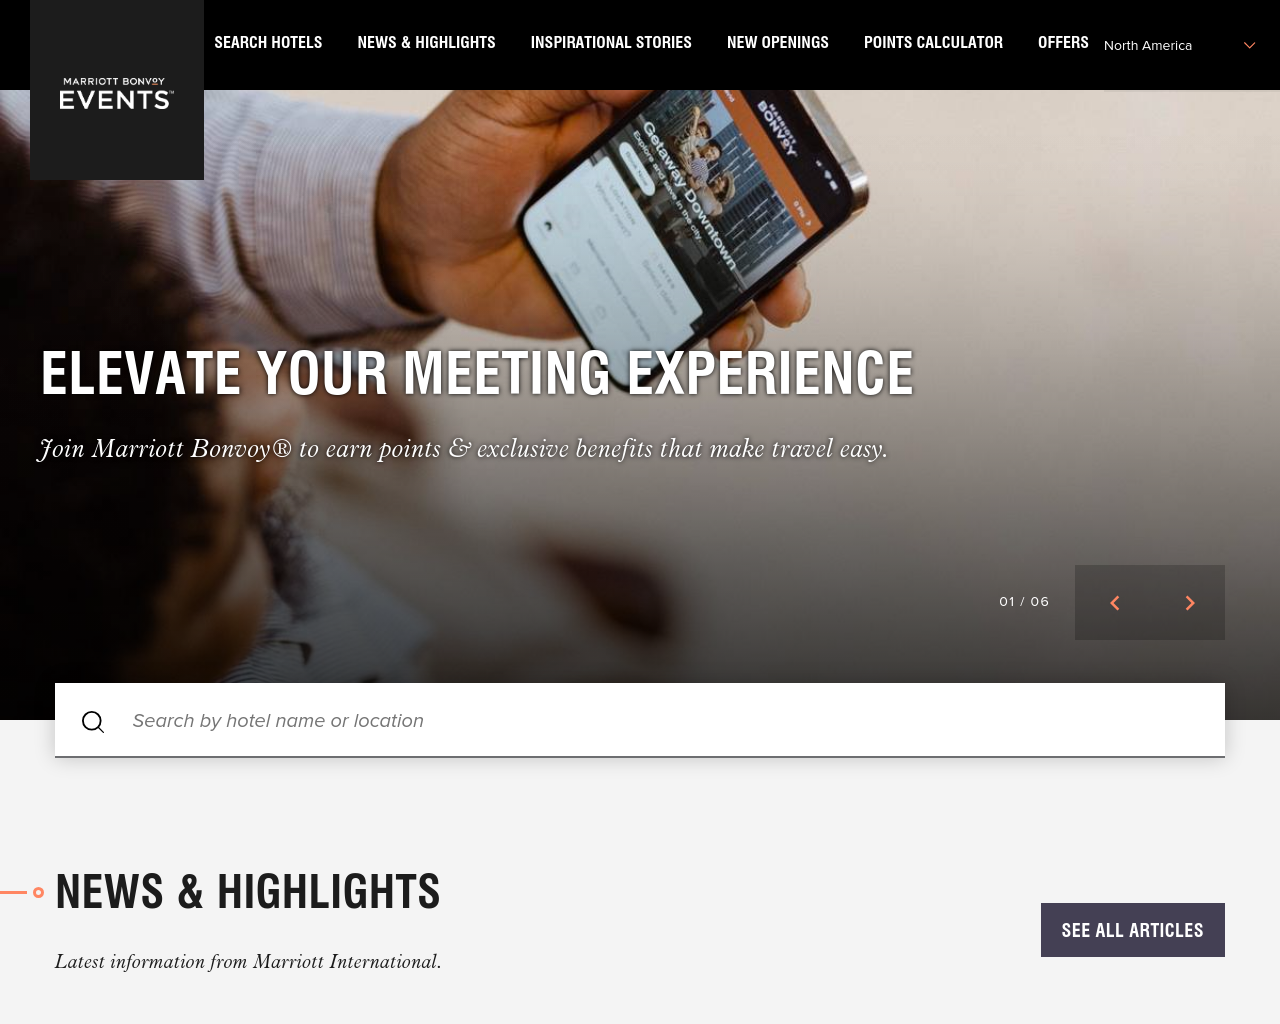 meetingsimagined.com